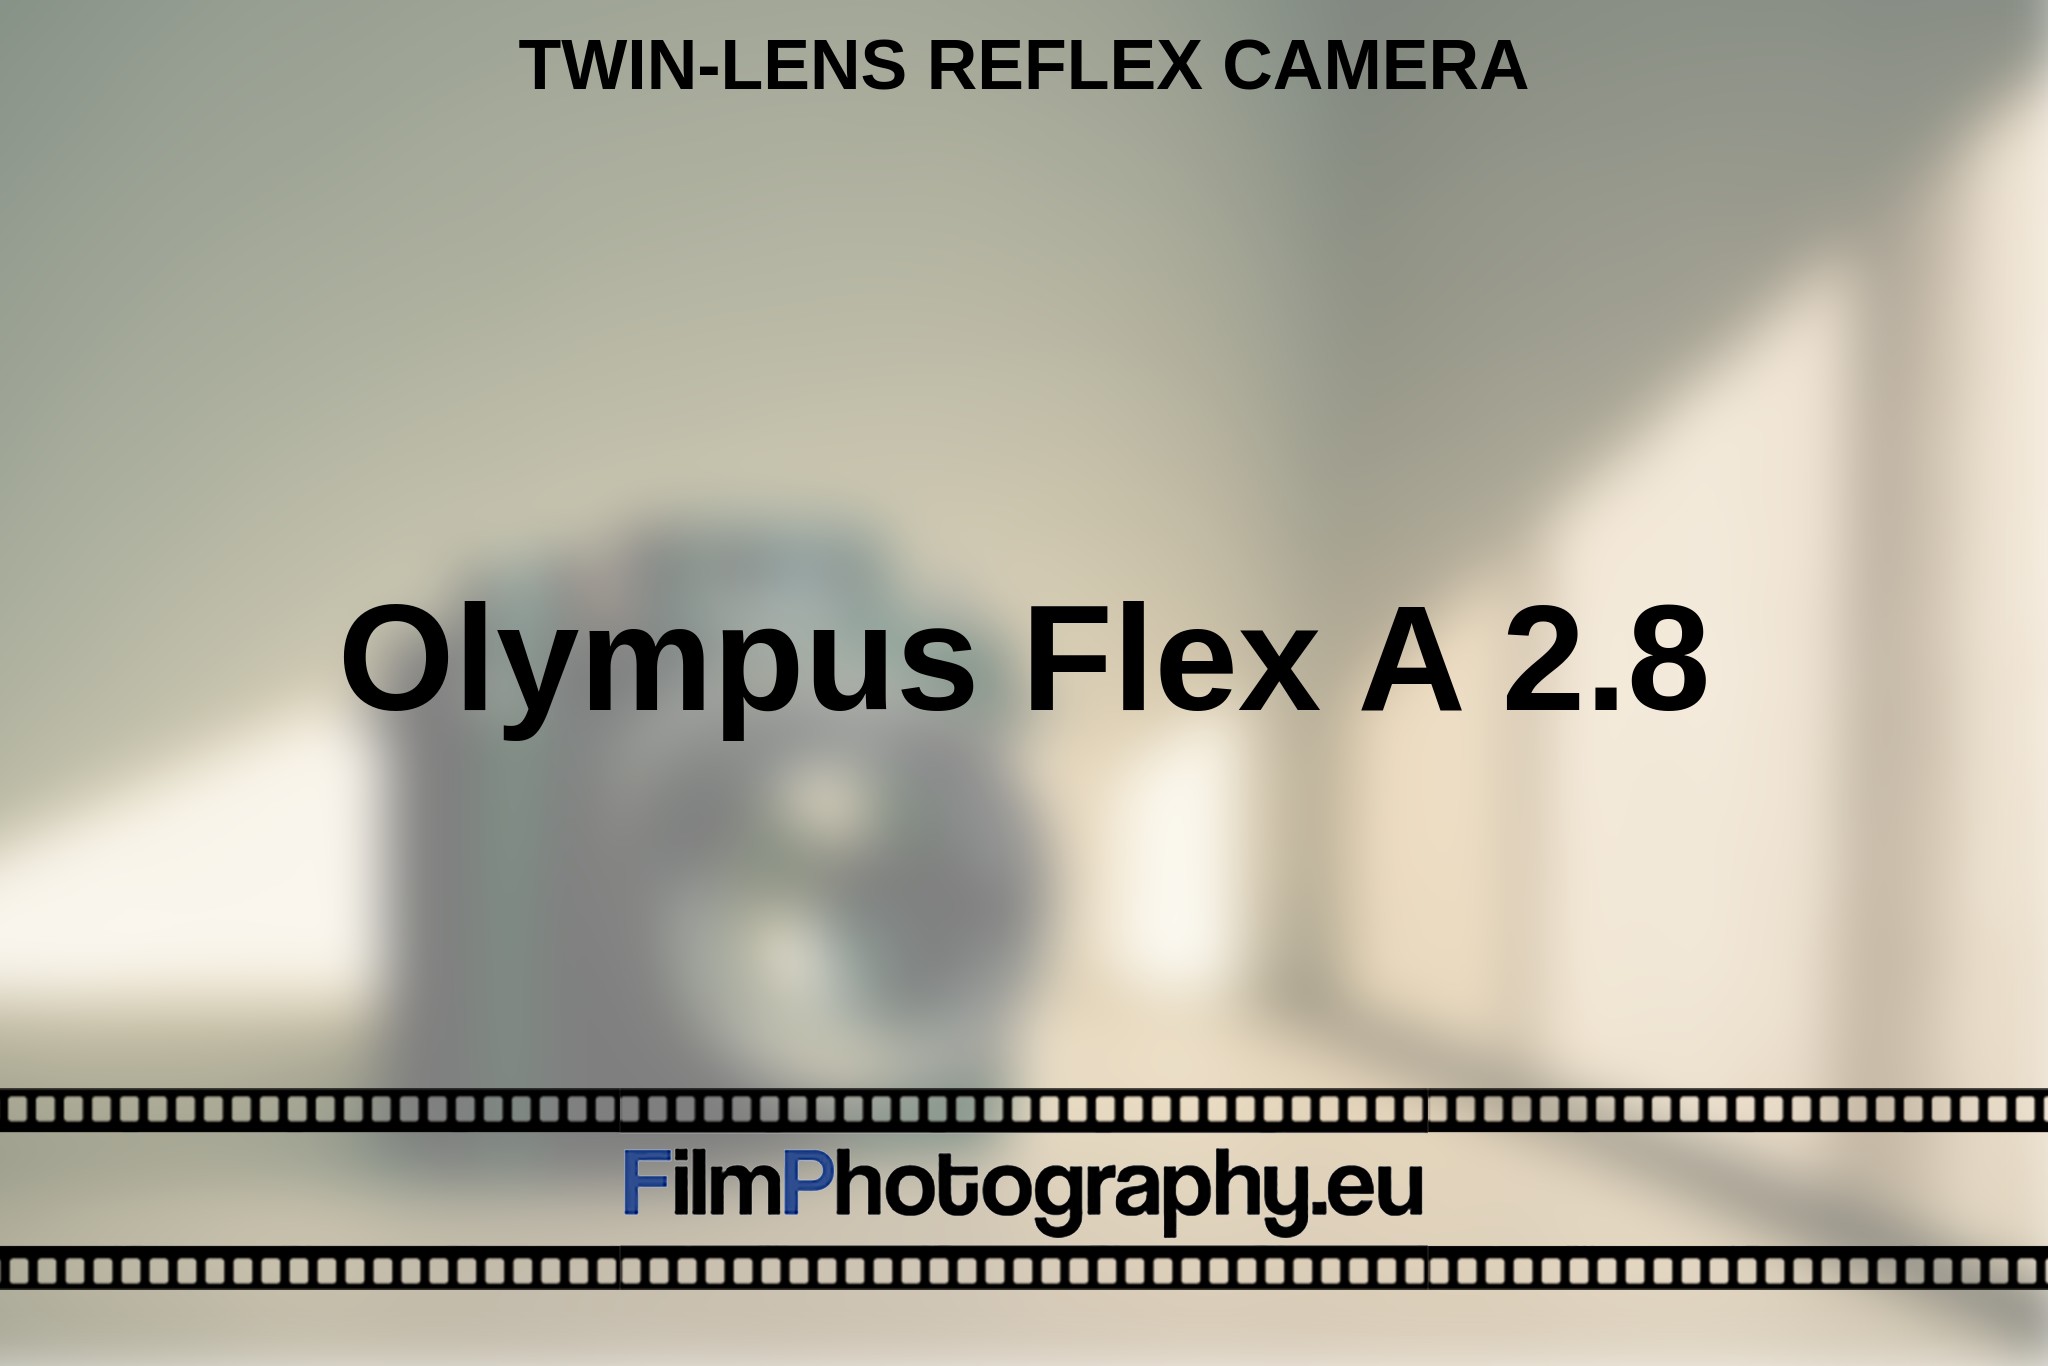 olympus-flex-a-2-8-twin-lens-reflex-camera-en-bnv.jpg